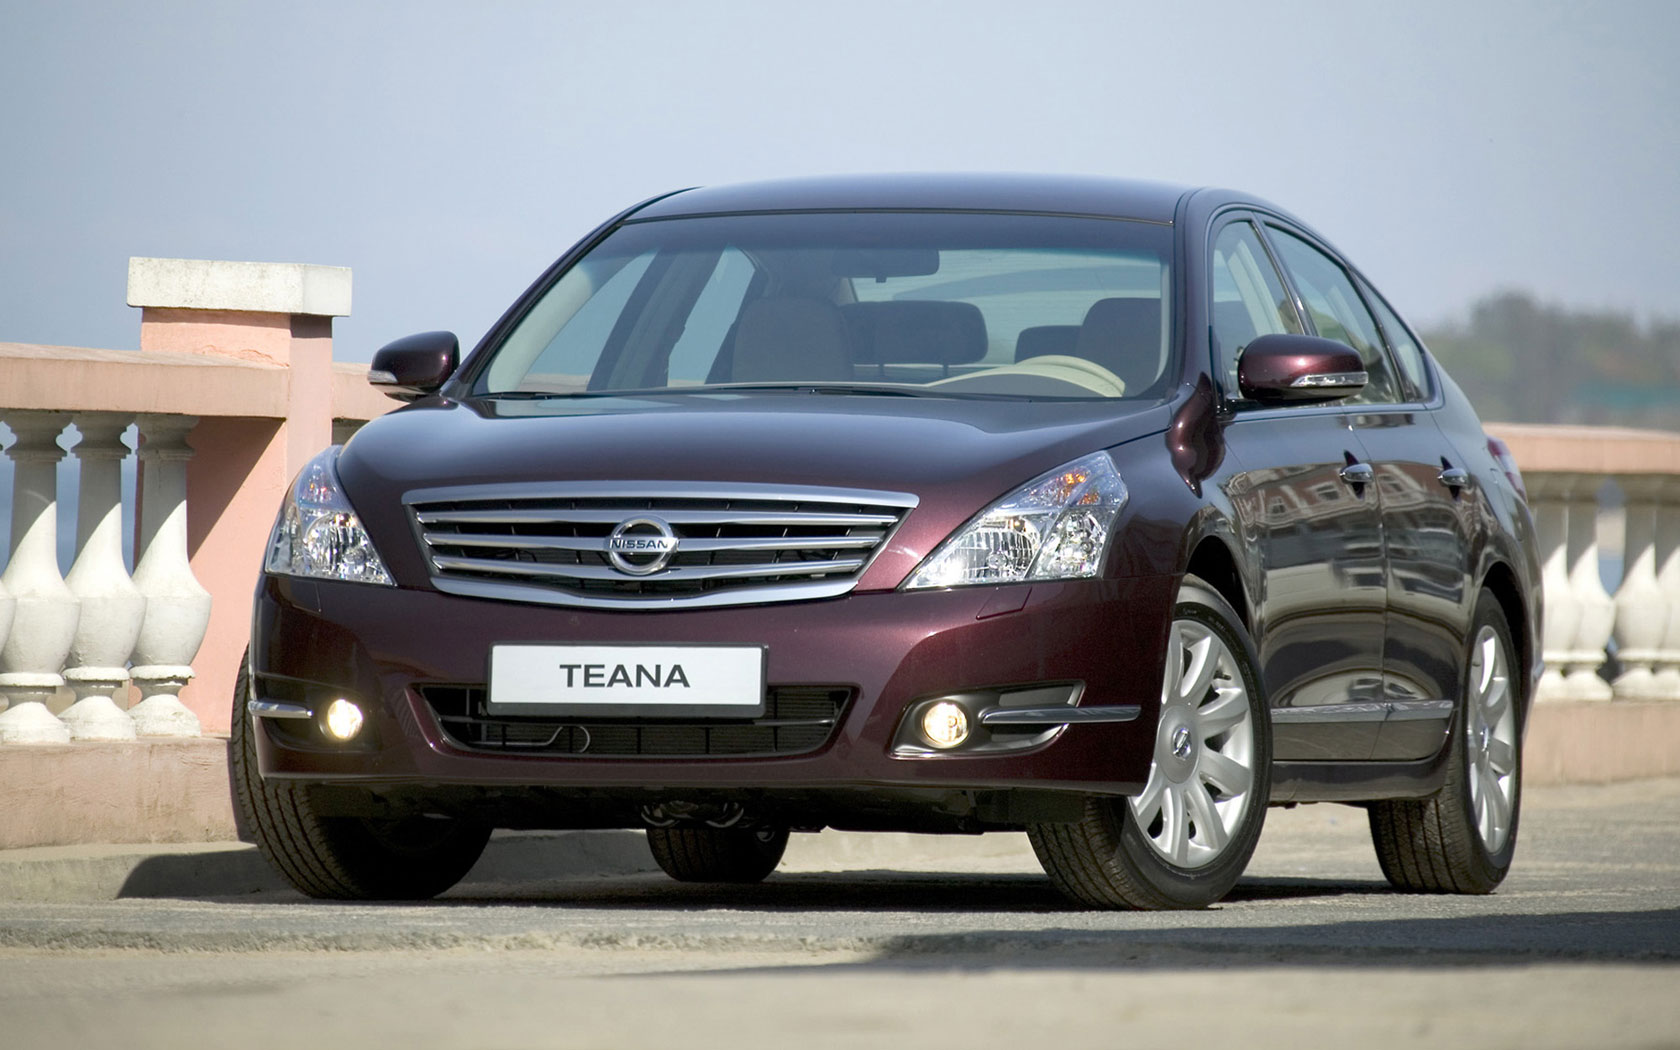  Nissan Teana (2008-2013)